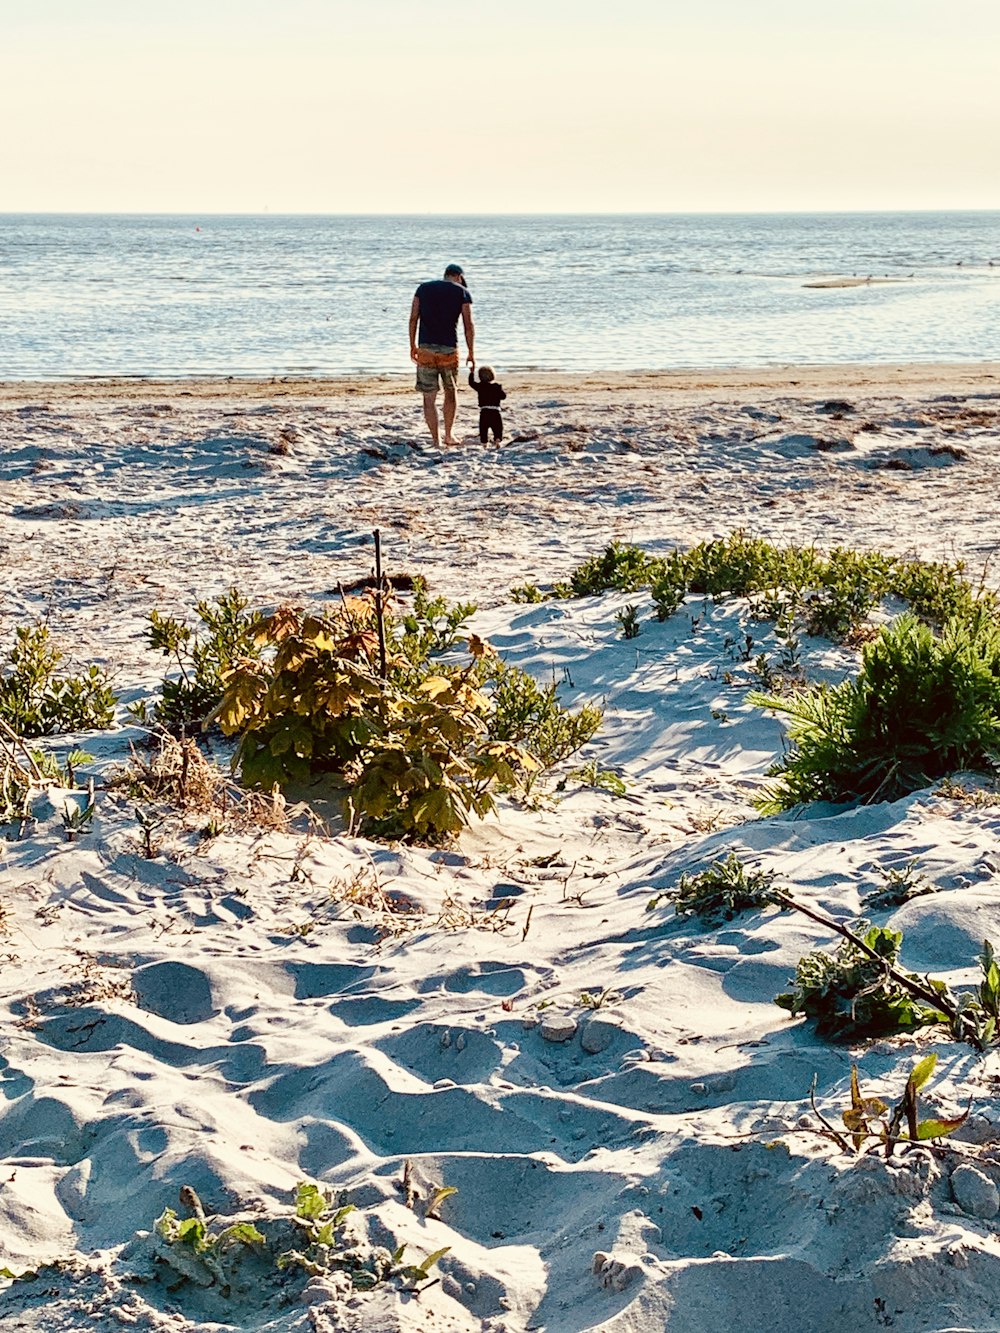 Mann und Frau, die tagsüber am Strand spazieren gehen